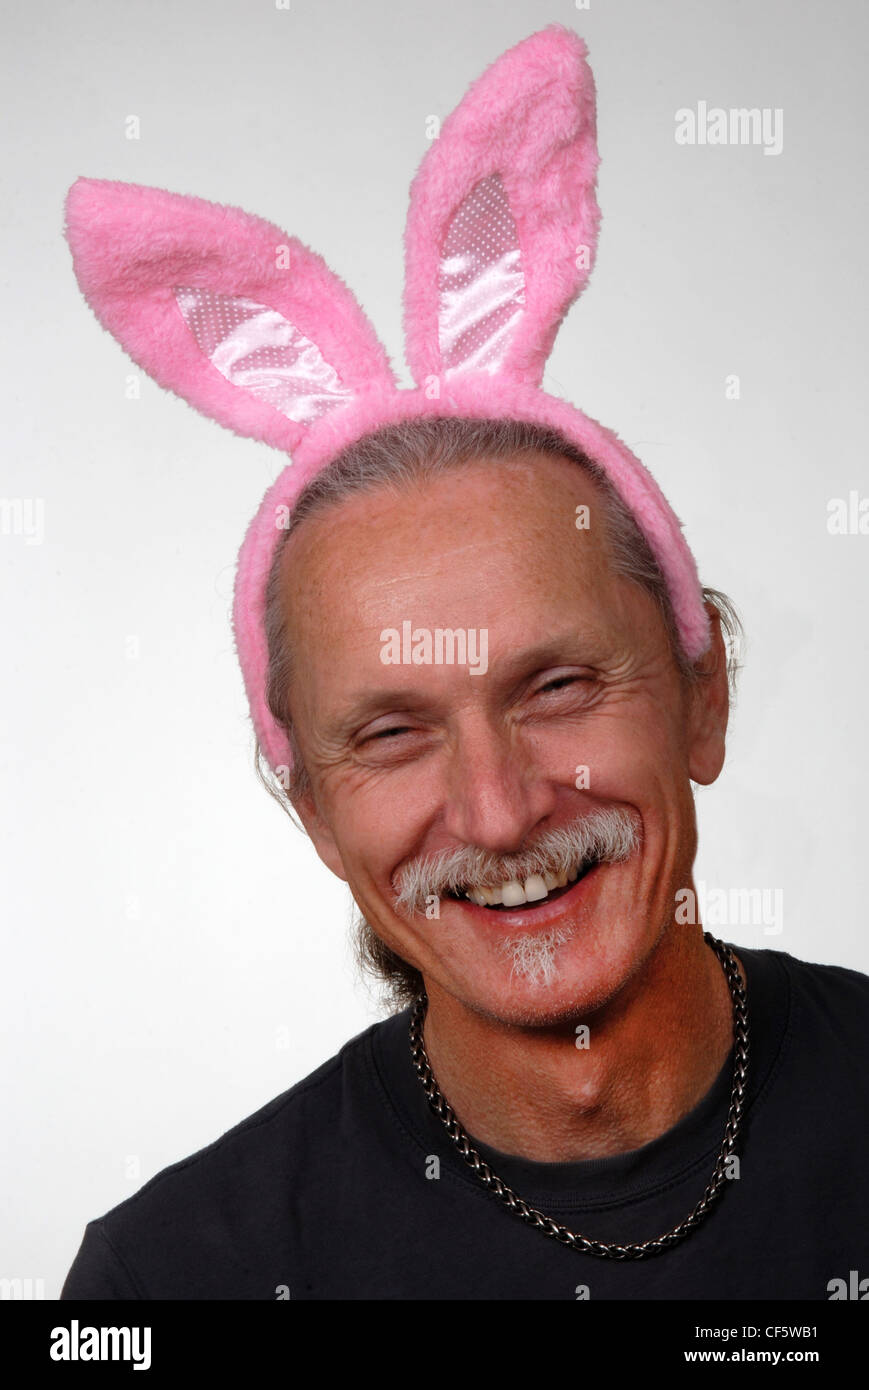 Laughing hombre vestido con orejas de conejo rosa. Aislado en blanco. Foto de stock